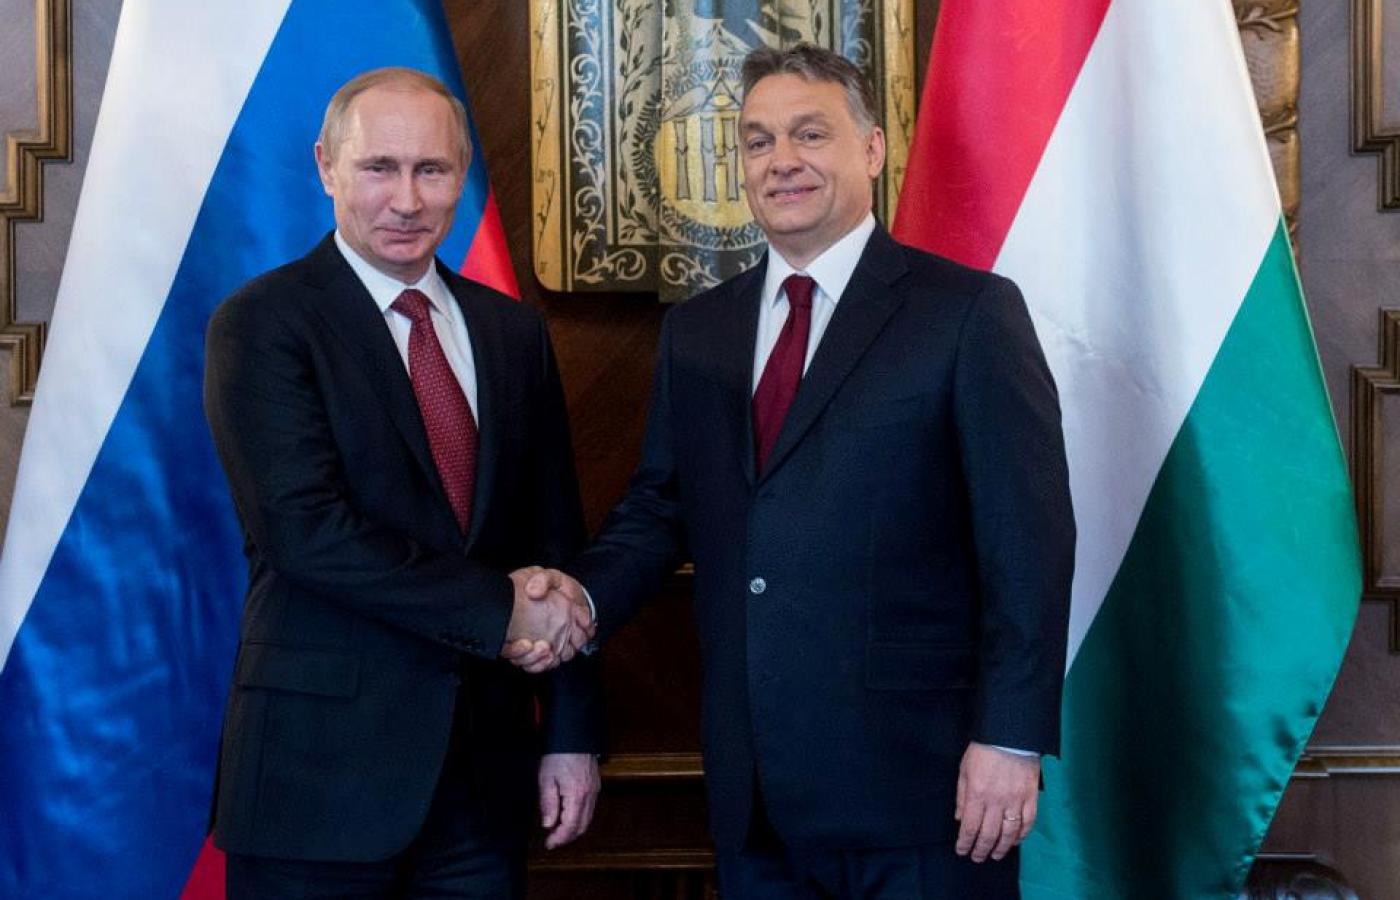 Prezydent Rosji Władimir Putin oraz premier Węgier Viktor Orbán w Budapeszcie, 17 lutego 2015.